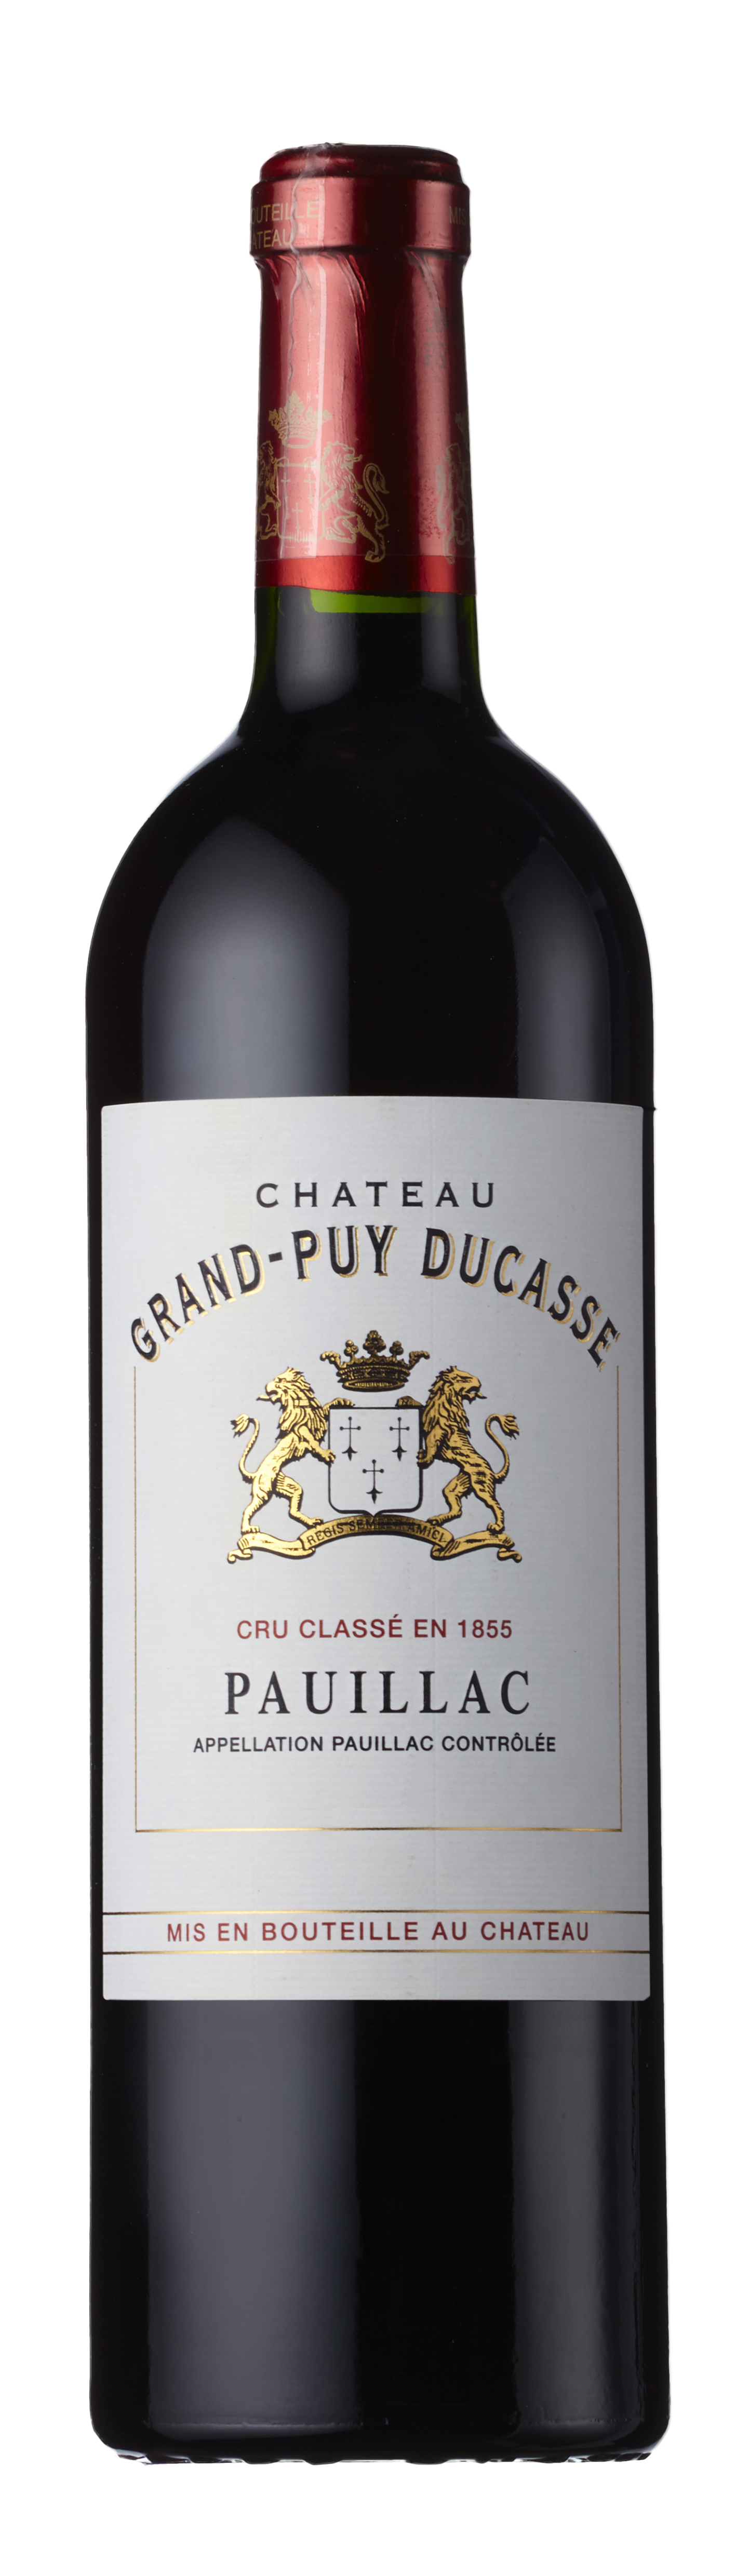 Bottle shot - Château Grand-Puy Ducasse 5ème Cru Classé, Pauillac, Bordeaux, France